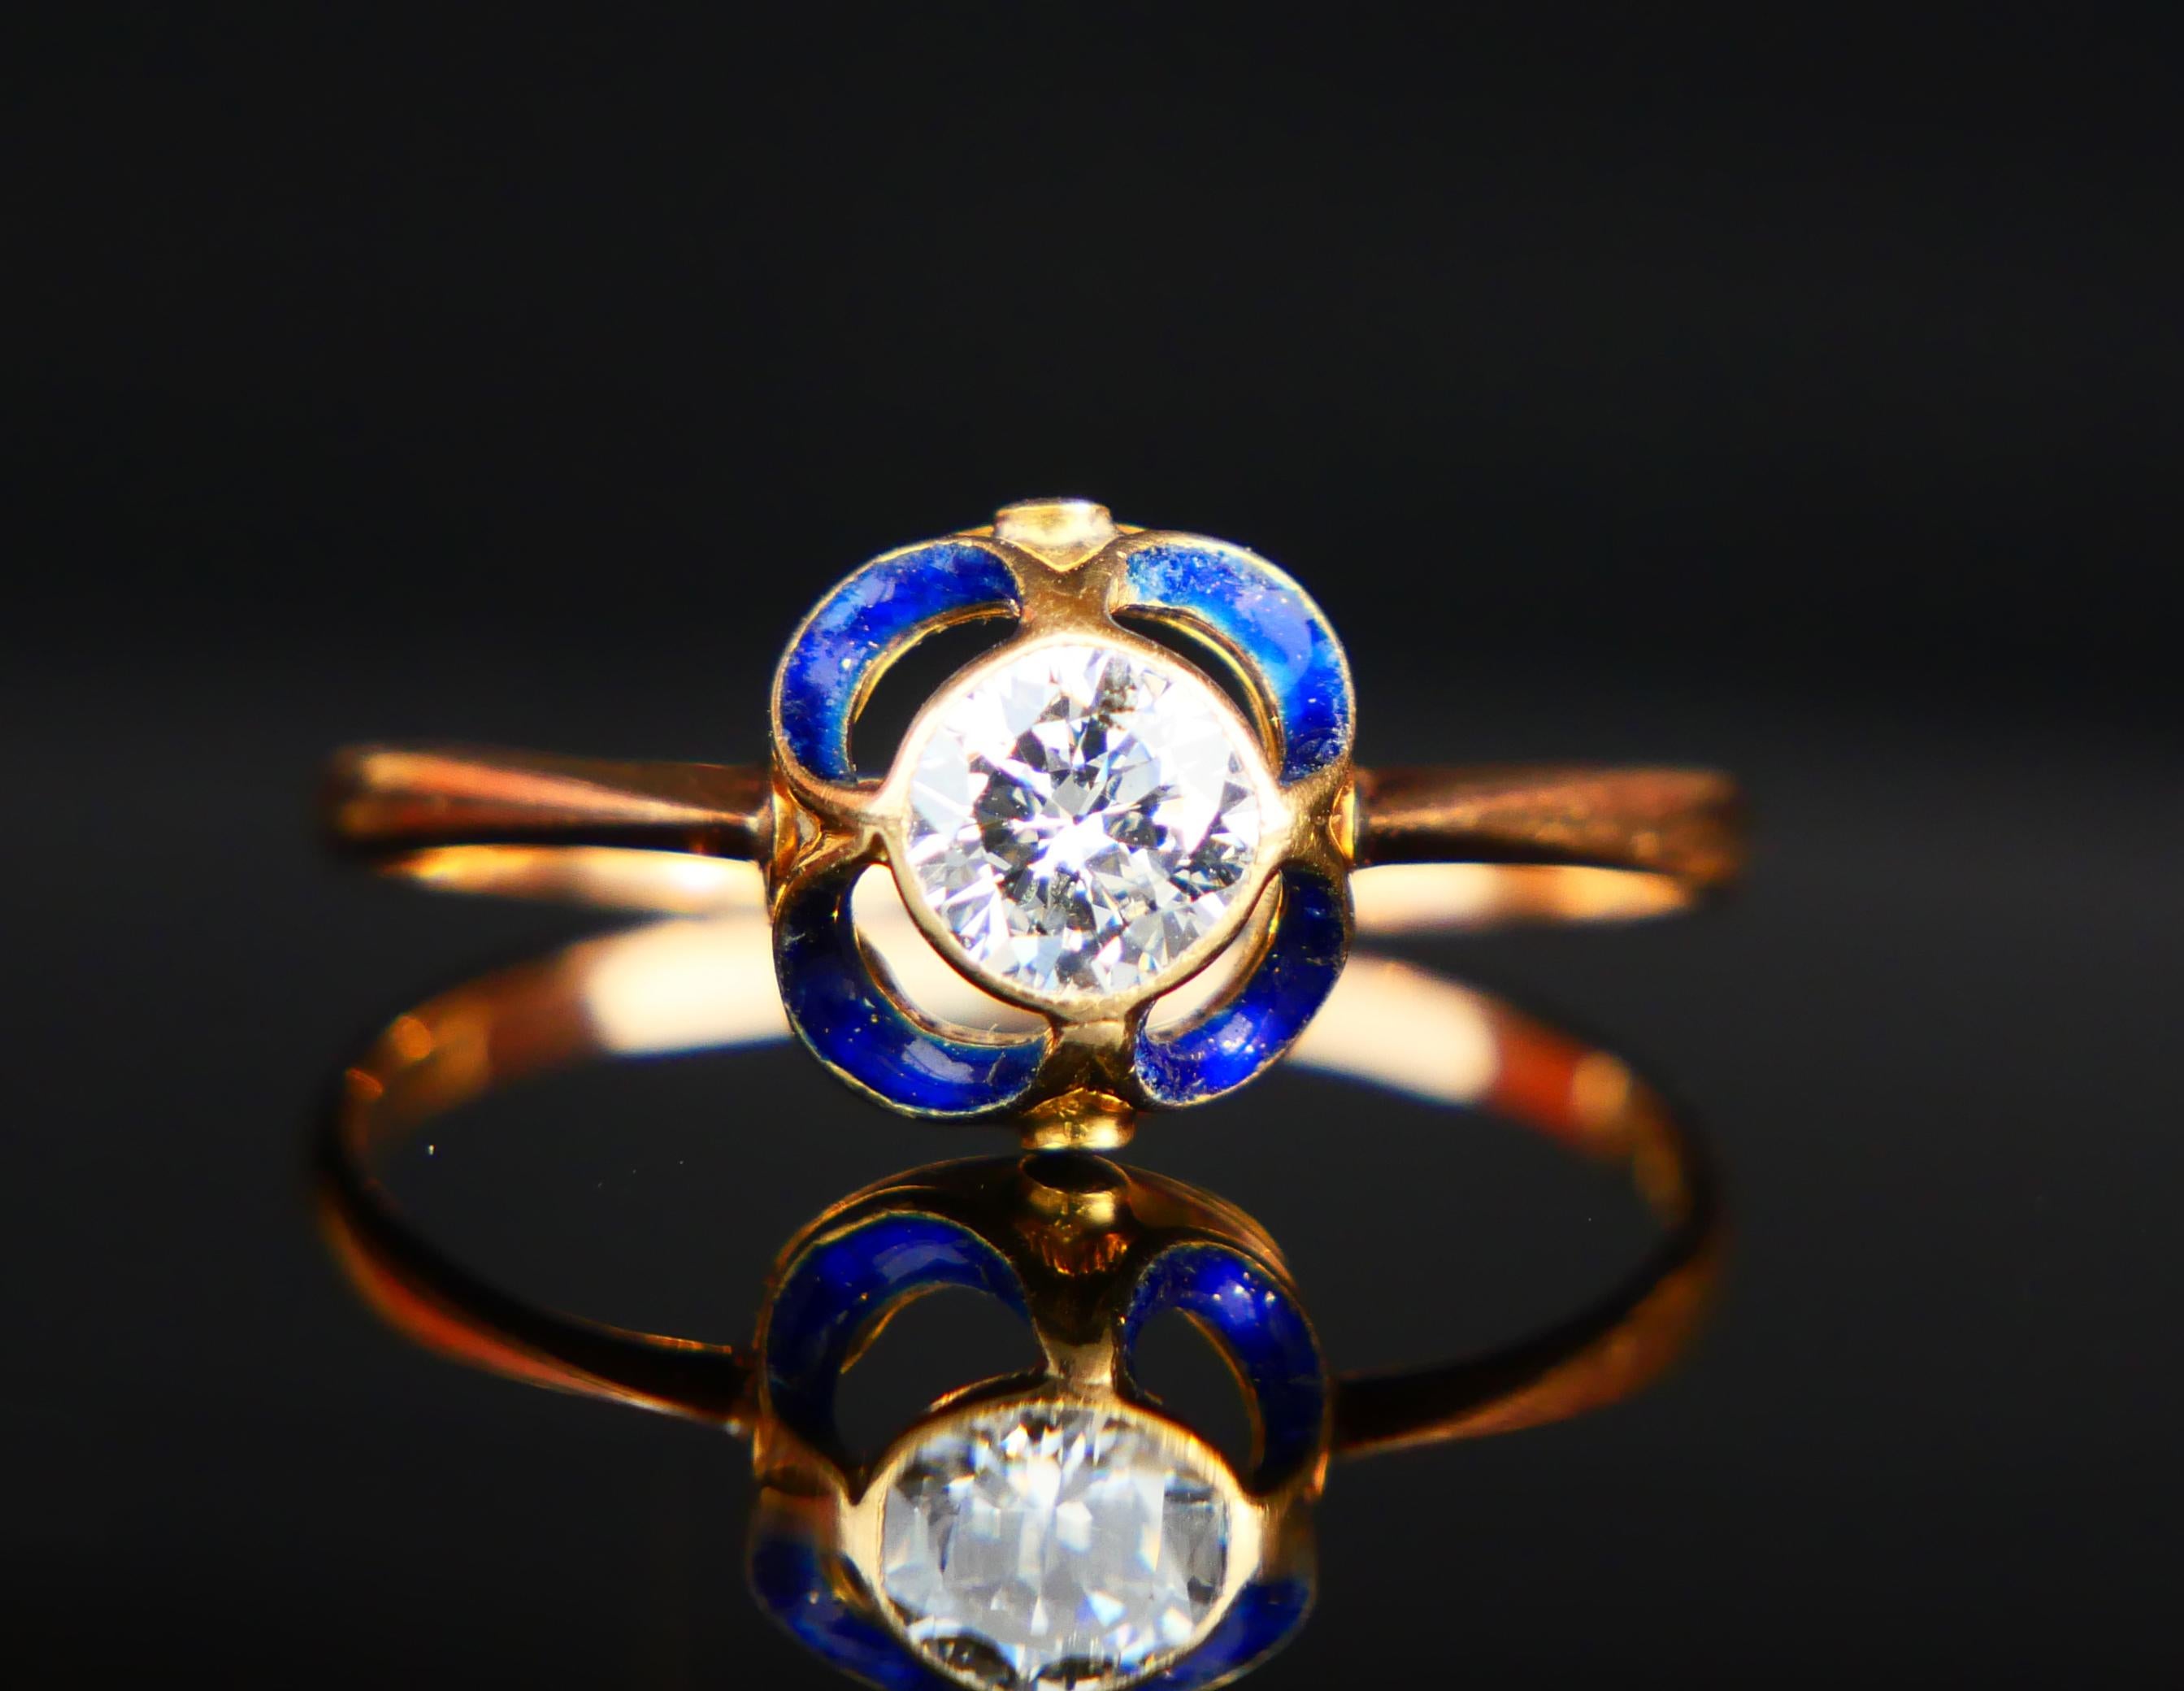 1904 Nordic Art Nouveau Ring 05ct. Diamond Blue Enamel 18K Gold ØUS9.5/2.5gr 4